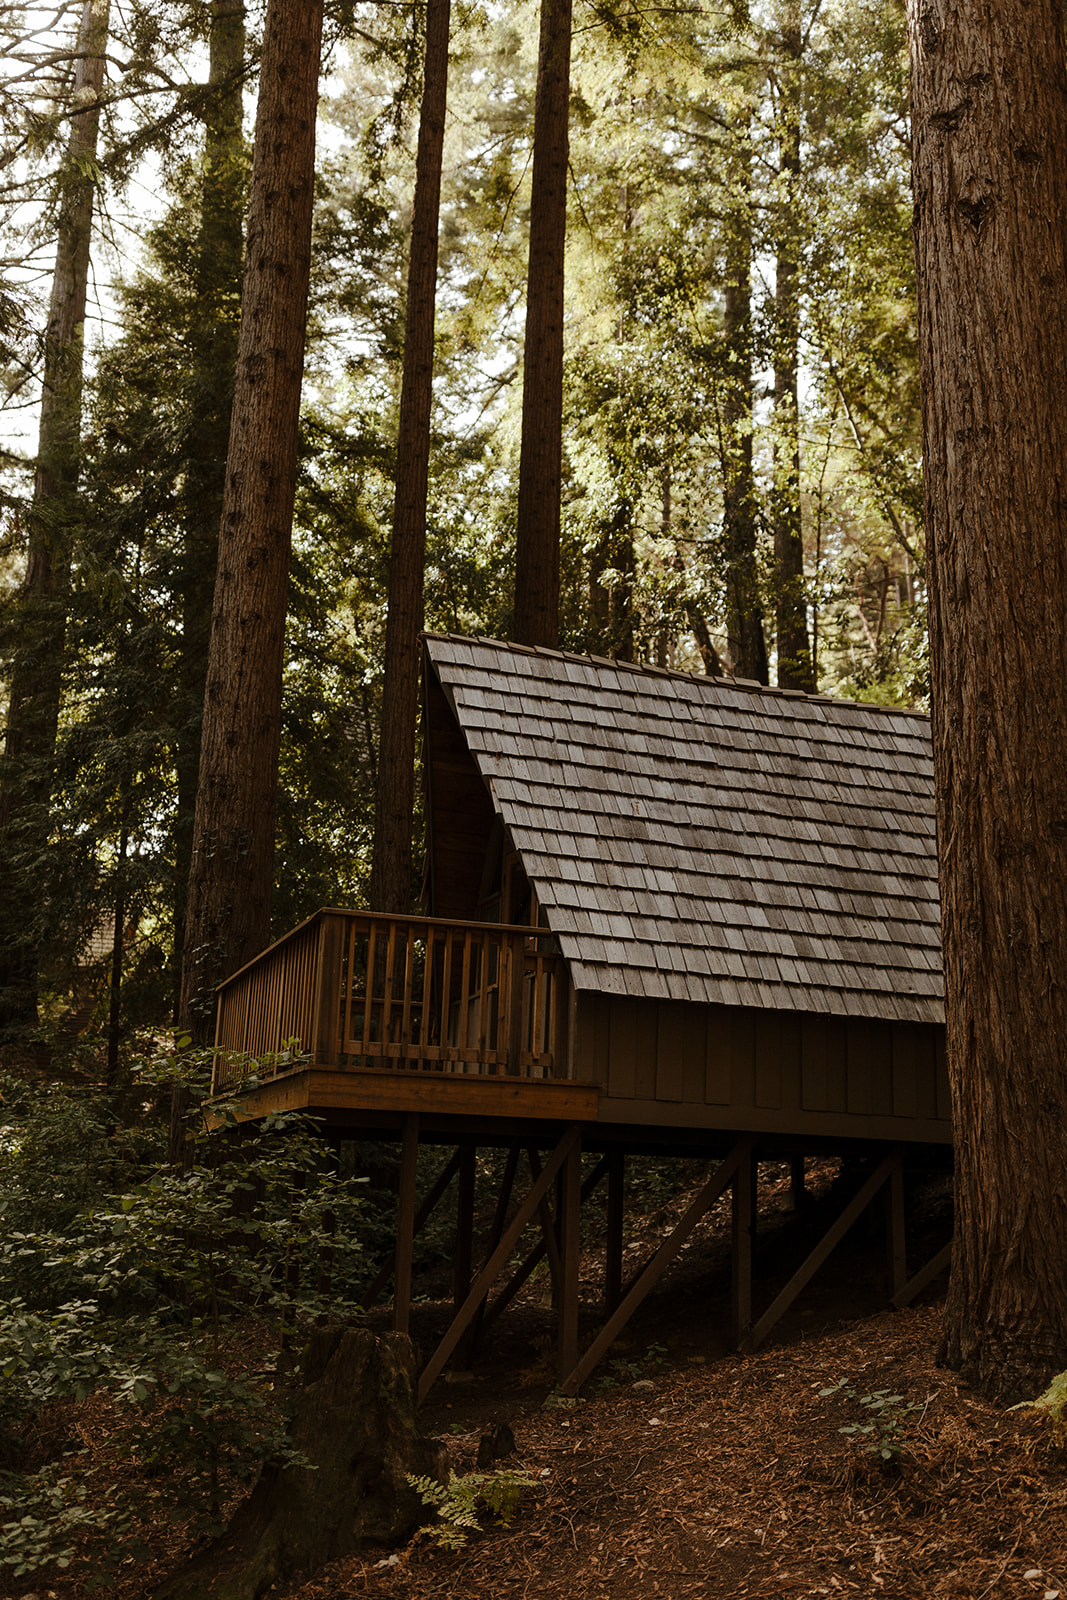 redwood forest wedding details